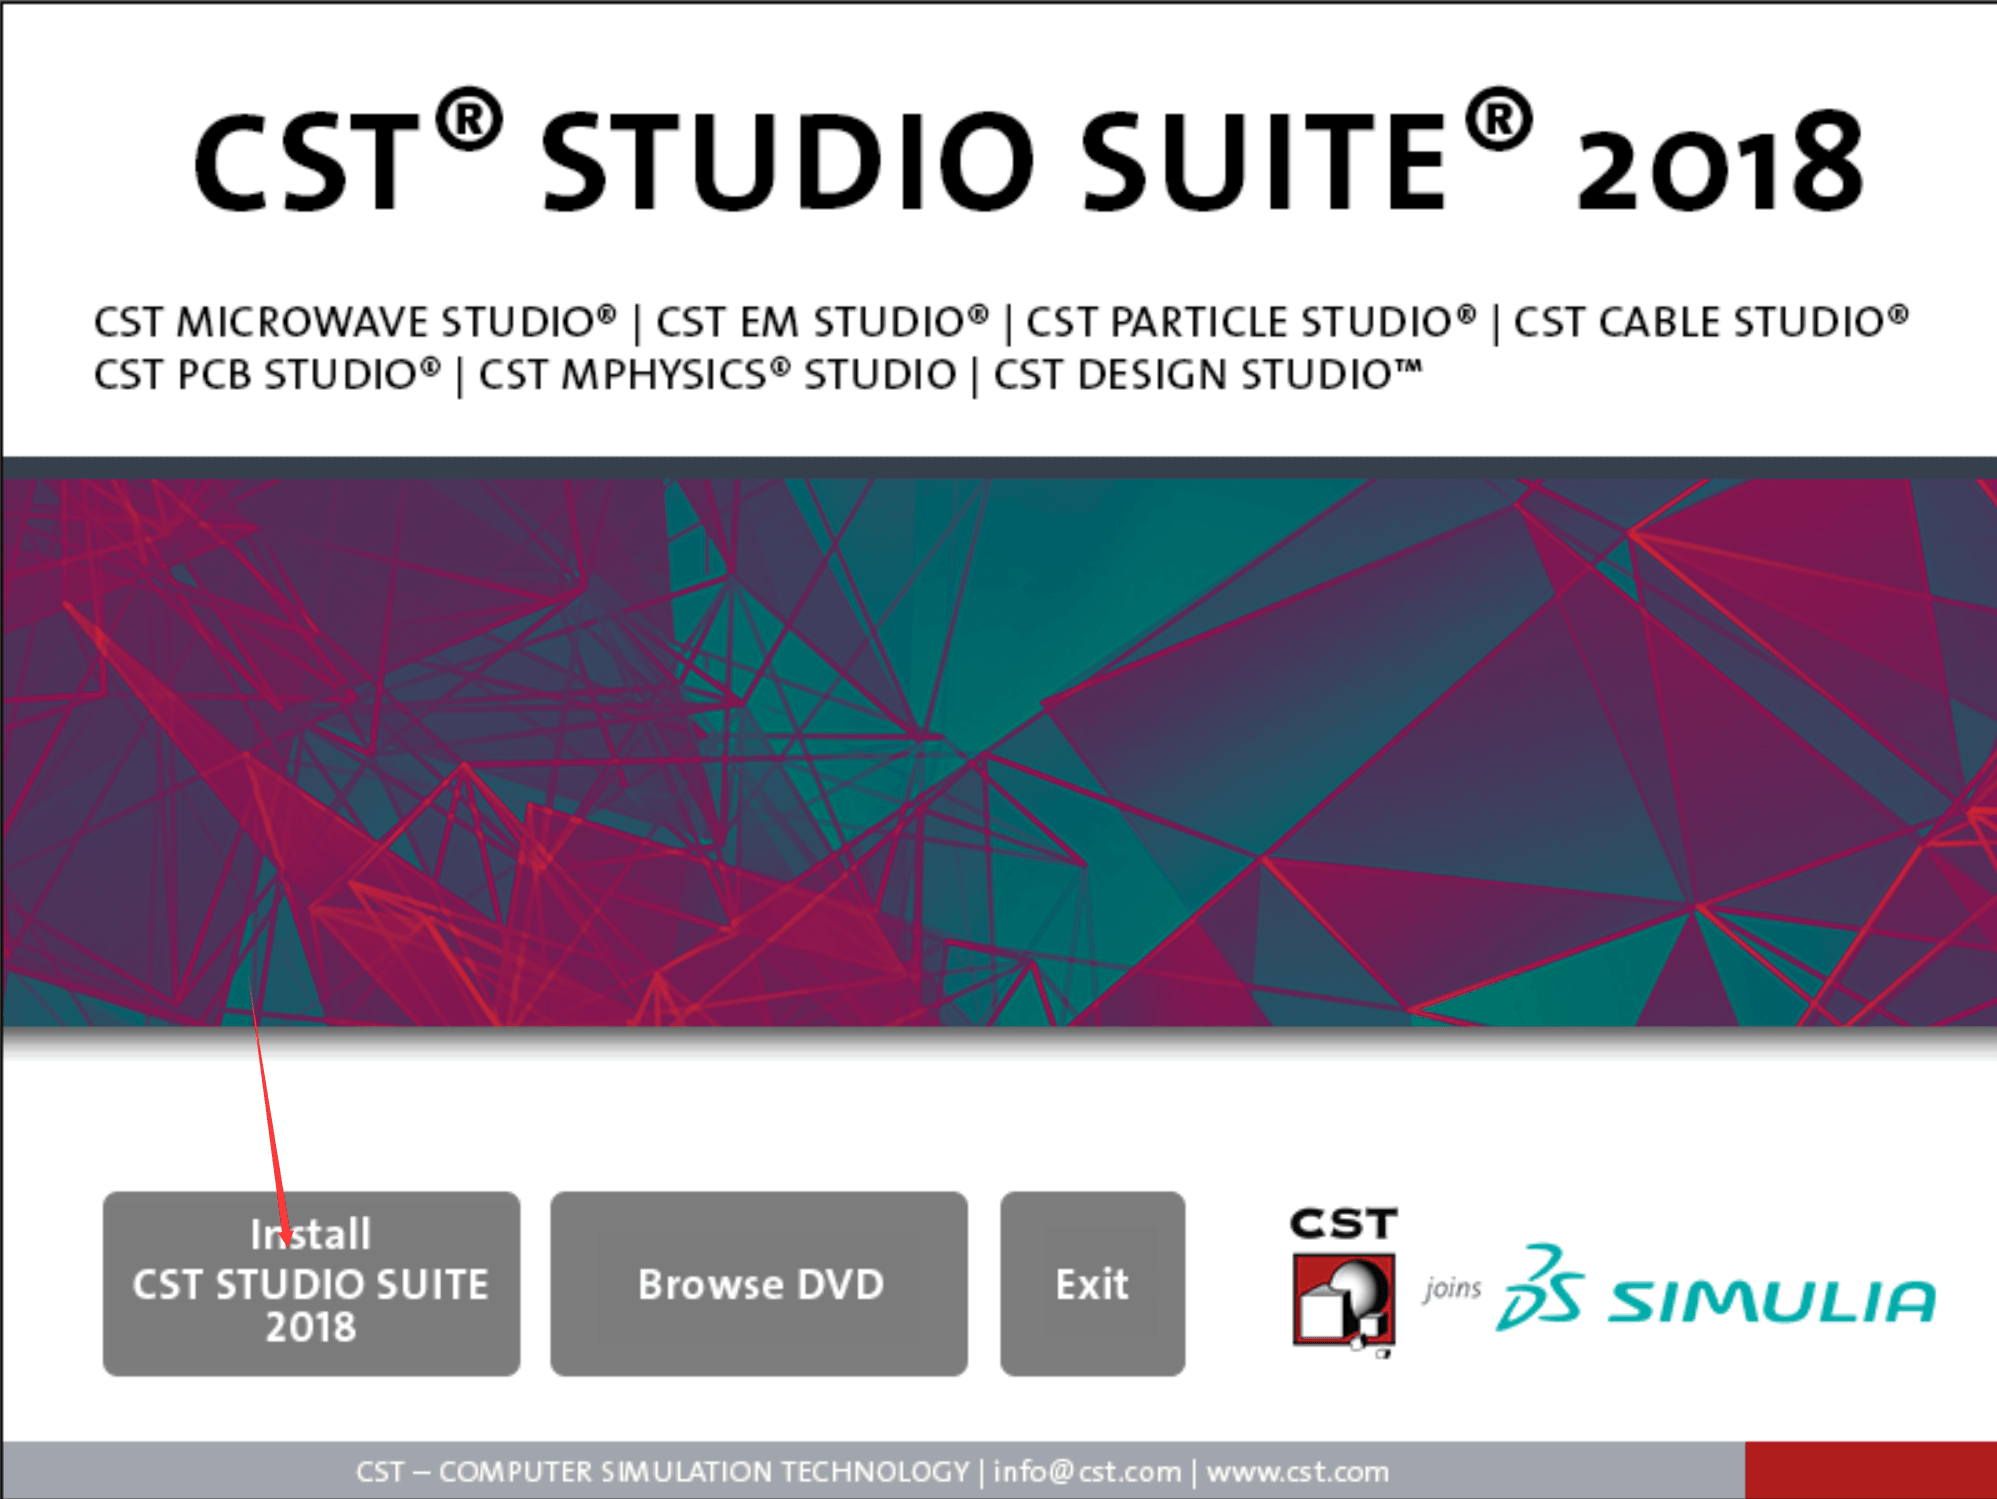 cst studio suite 2018